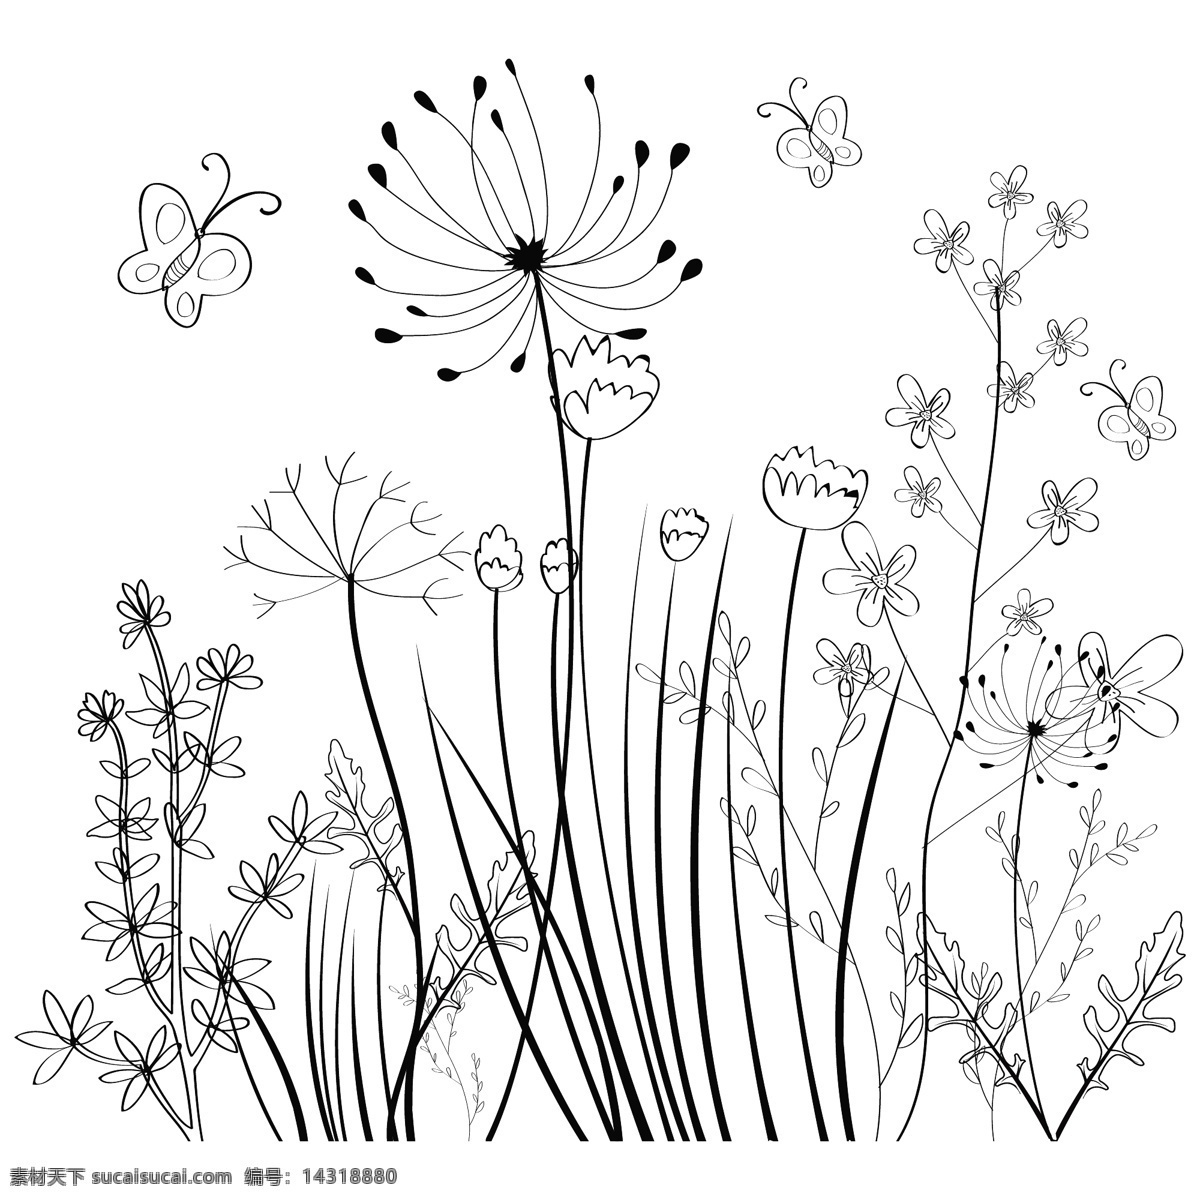 野生 花卉 场 背景 黑白 素描 免费 矢量 花 花朵 植物 黑白植物 蝴蝶 矢量背景花纹